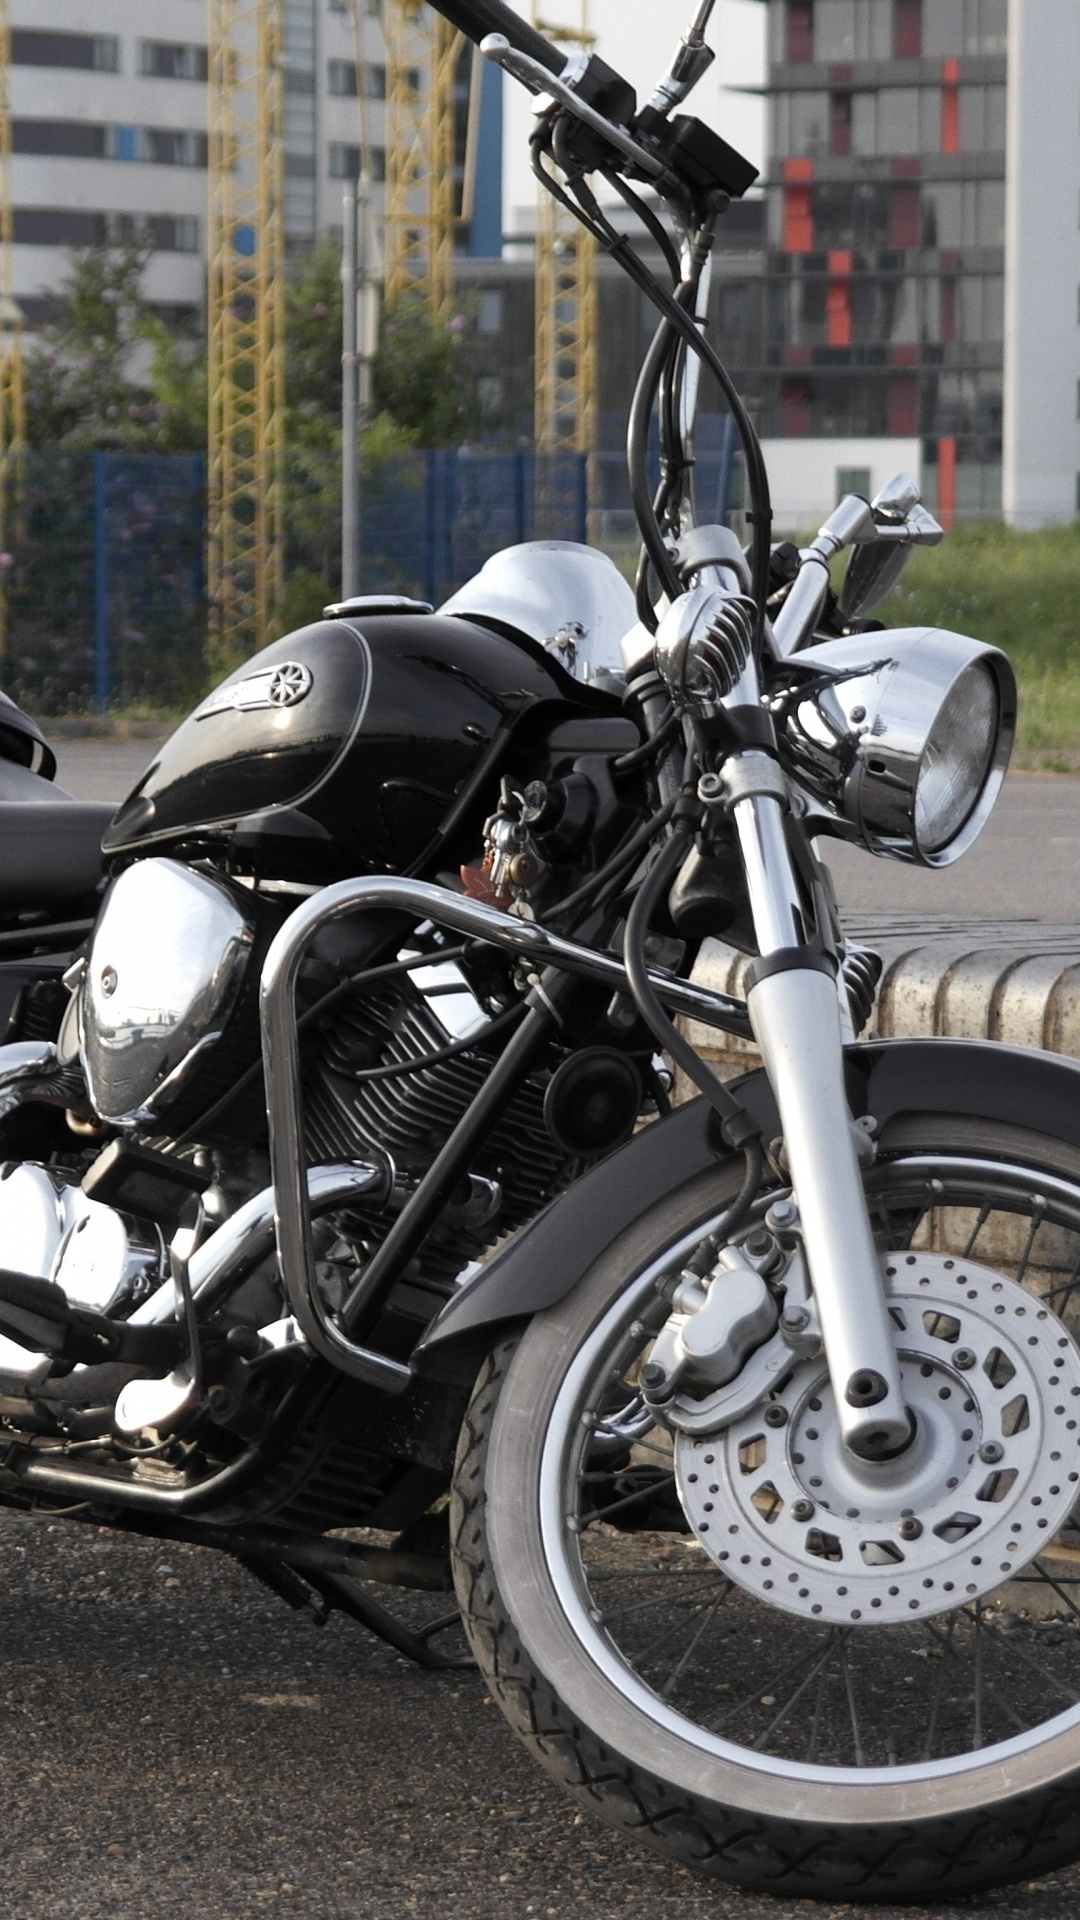 Motocicleta Cruiser Negra y Plateada en la Carretera Durante el Día. Wallpaper in 1080x1920 Resolution